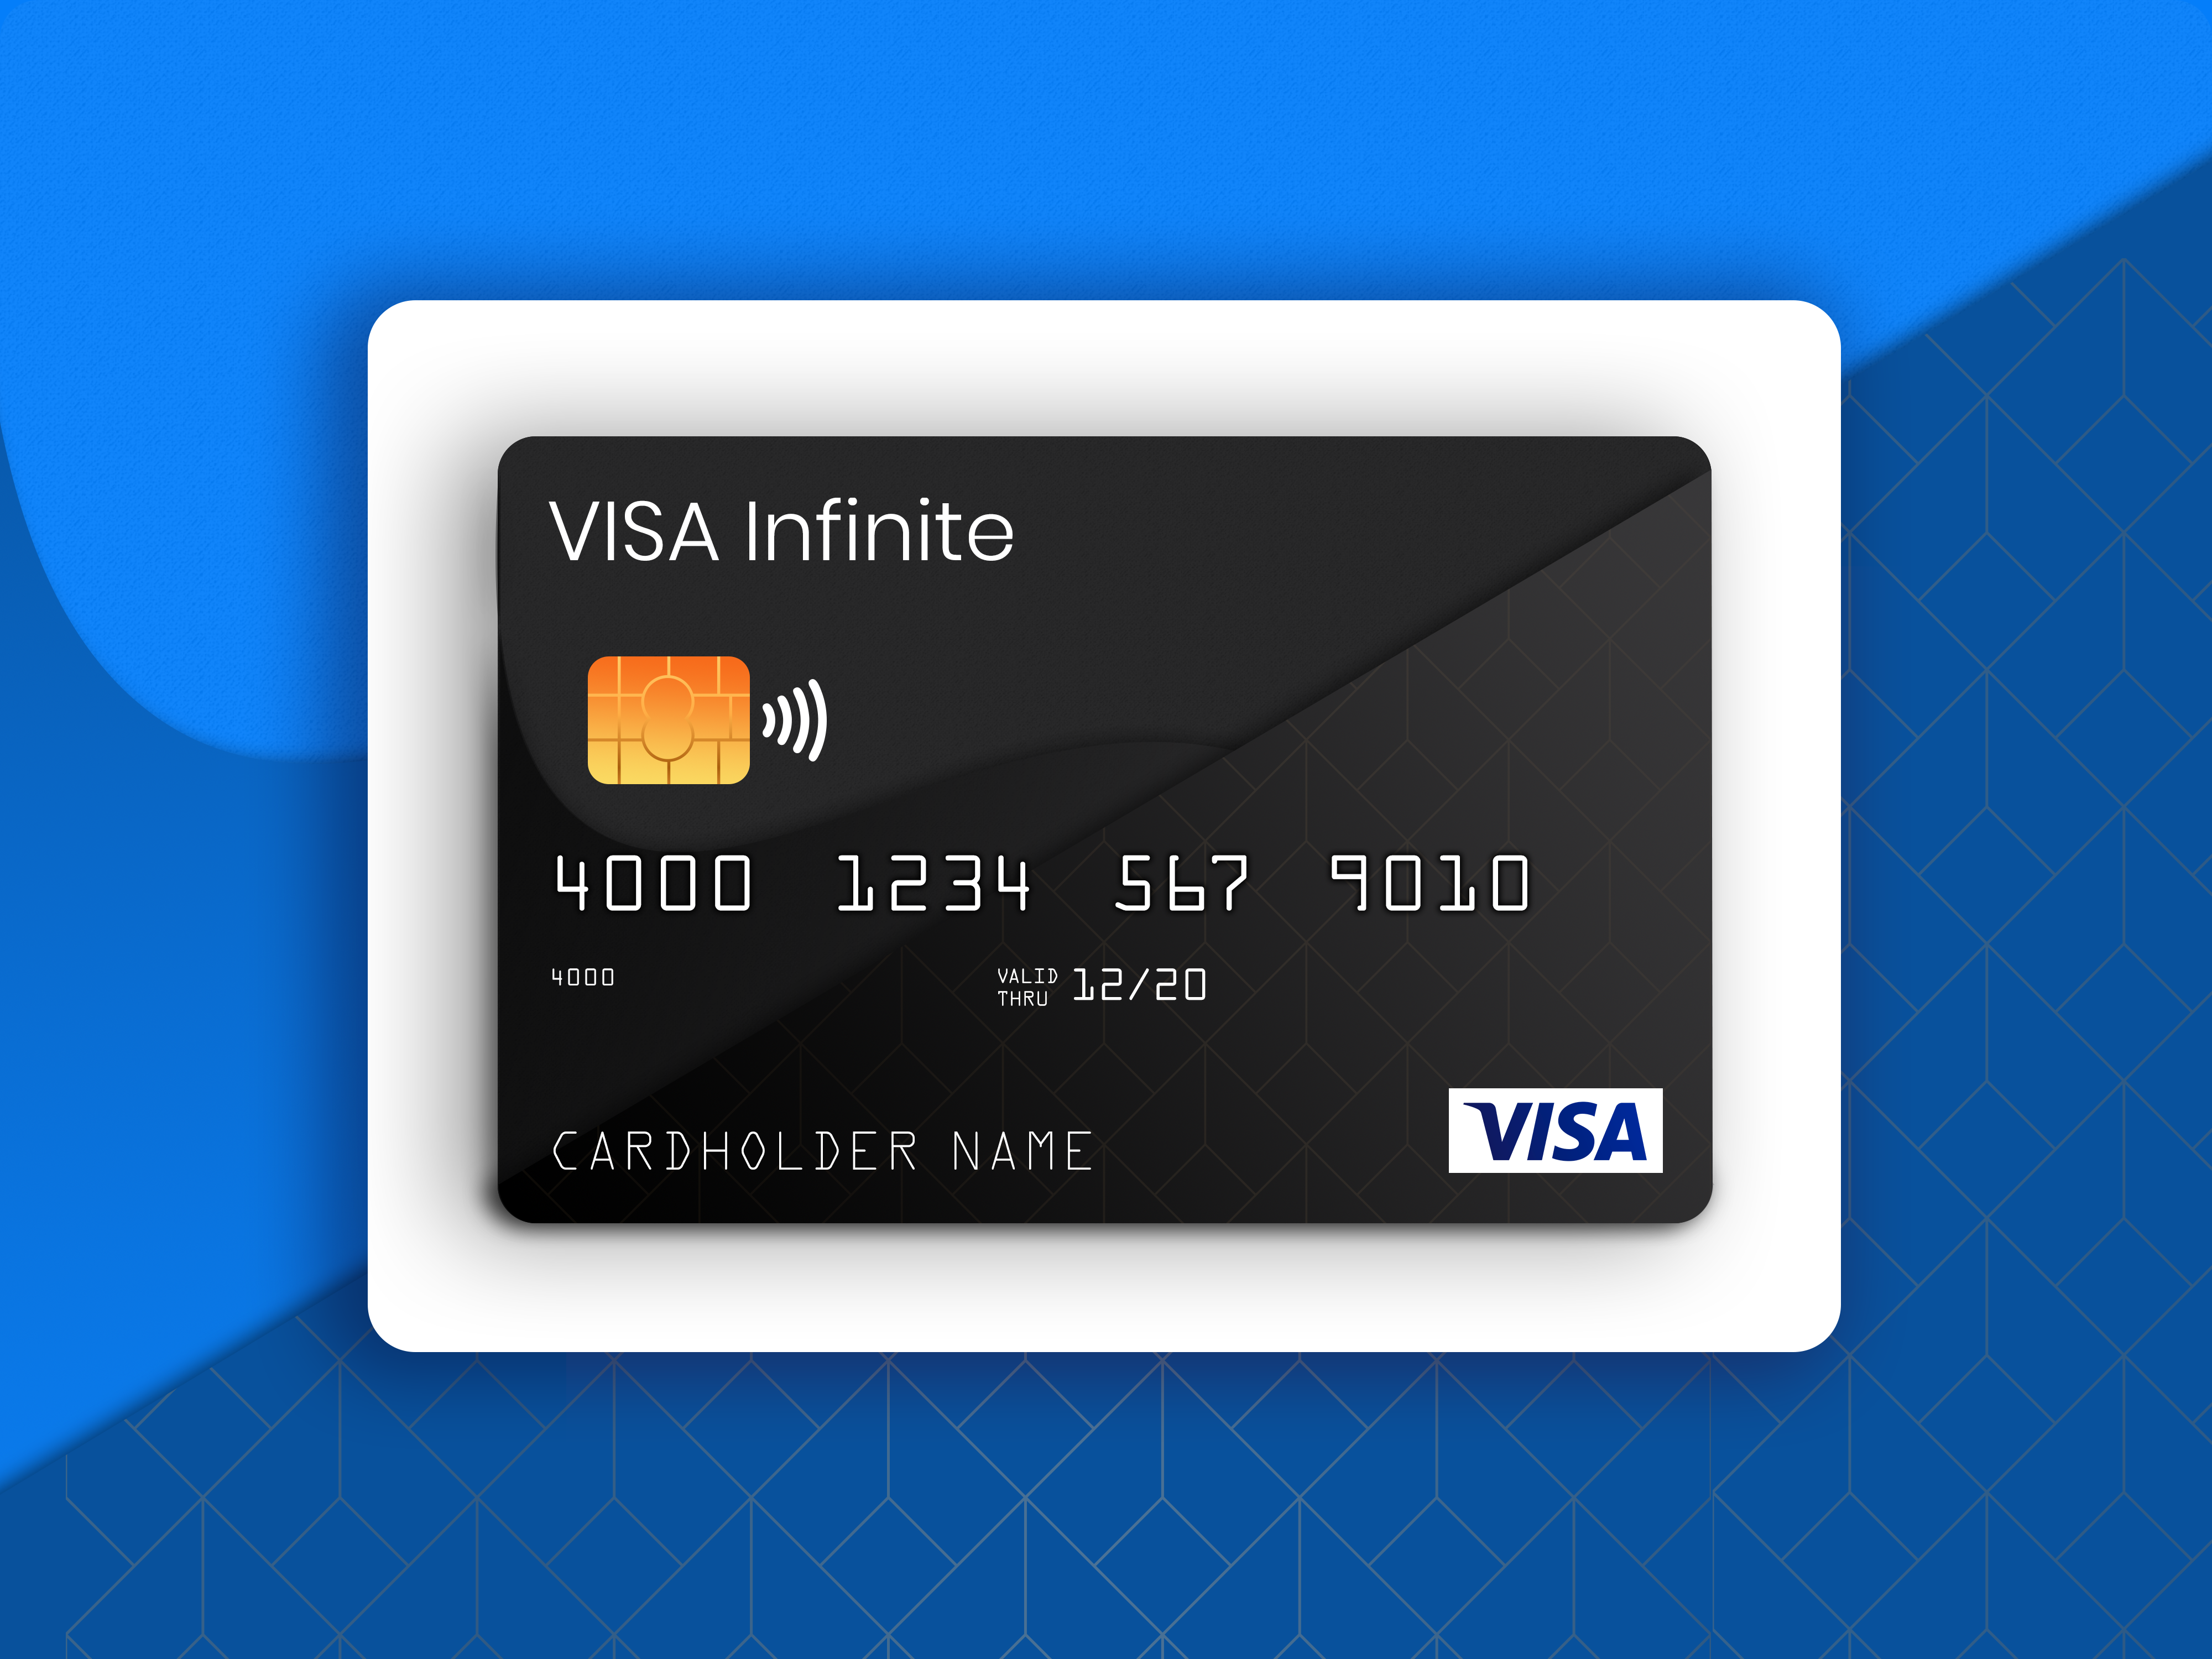 Виртуальные карты игра. Карта visa. Карта visa Infinite. Visa Card 4500. Visa Infinite Gold Platinum.